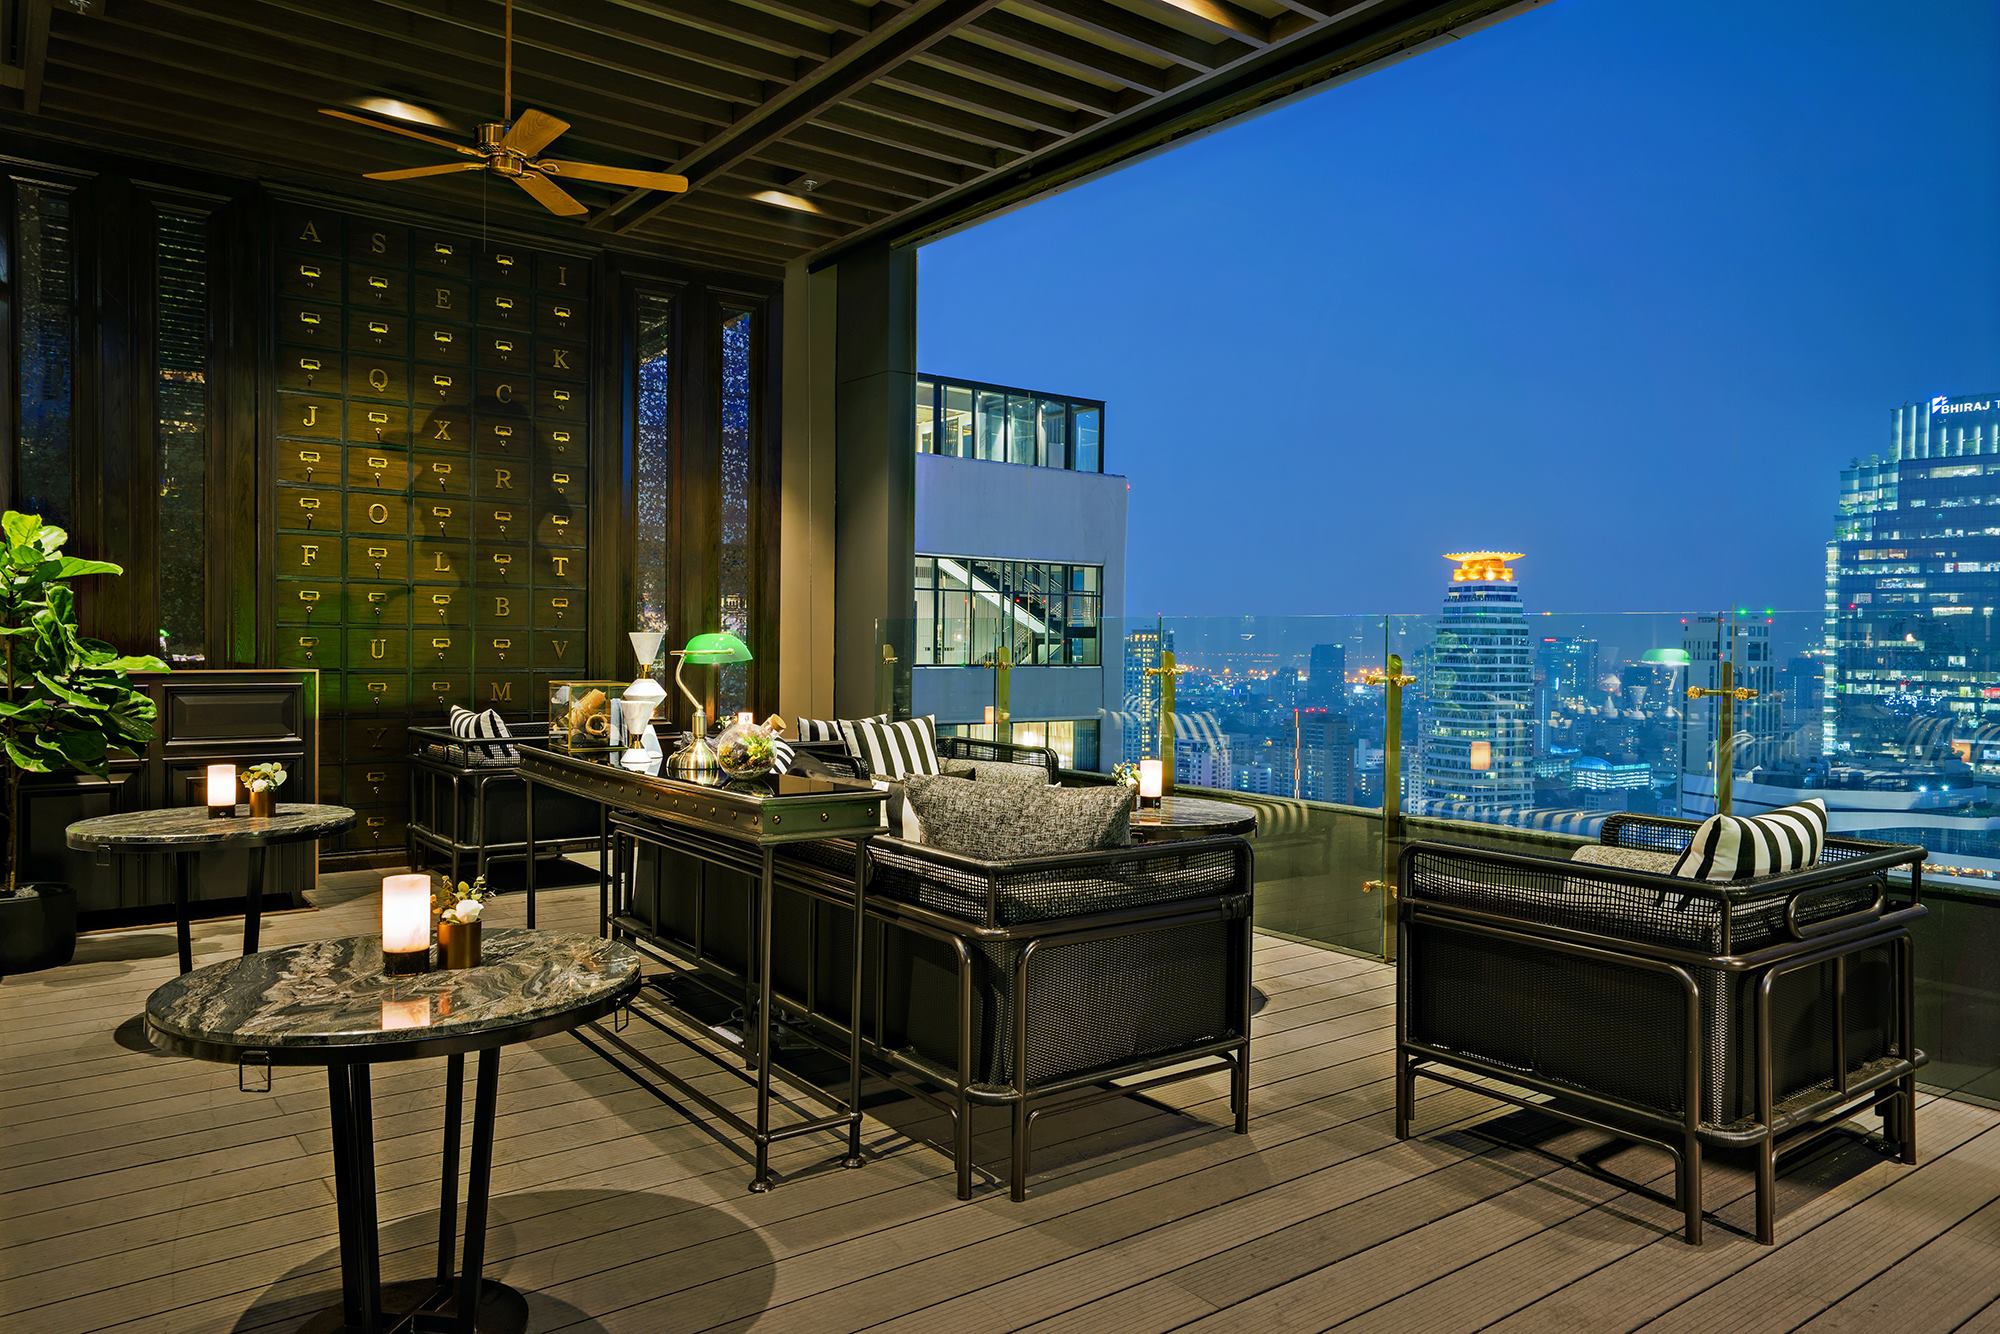 ABar & ABar Rooftop (เอบาร์ แอนด์ เอบาร์รูฟท็อปบาร์) : Bangkok (กรุงเทพมหานคร)